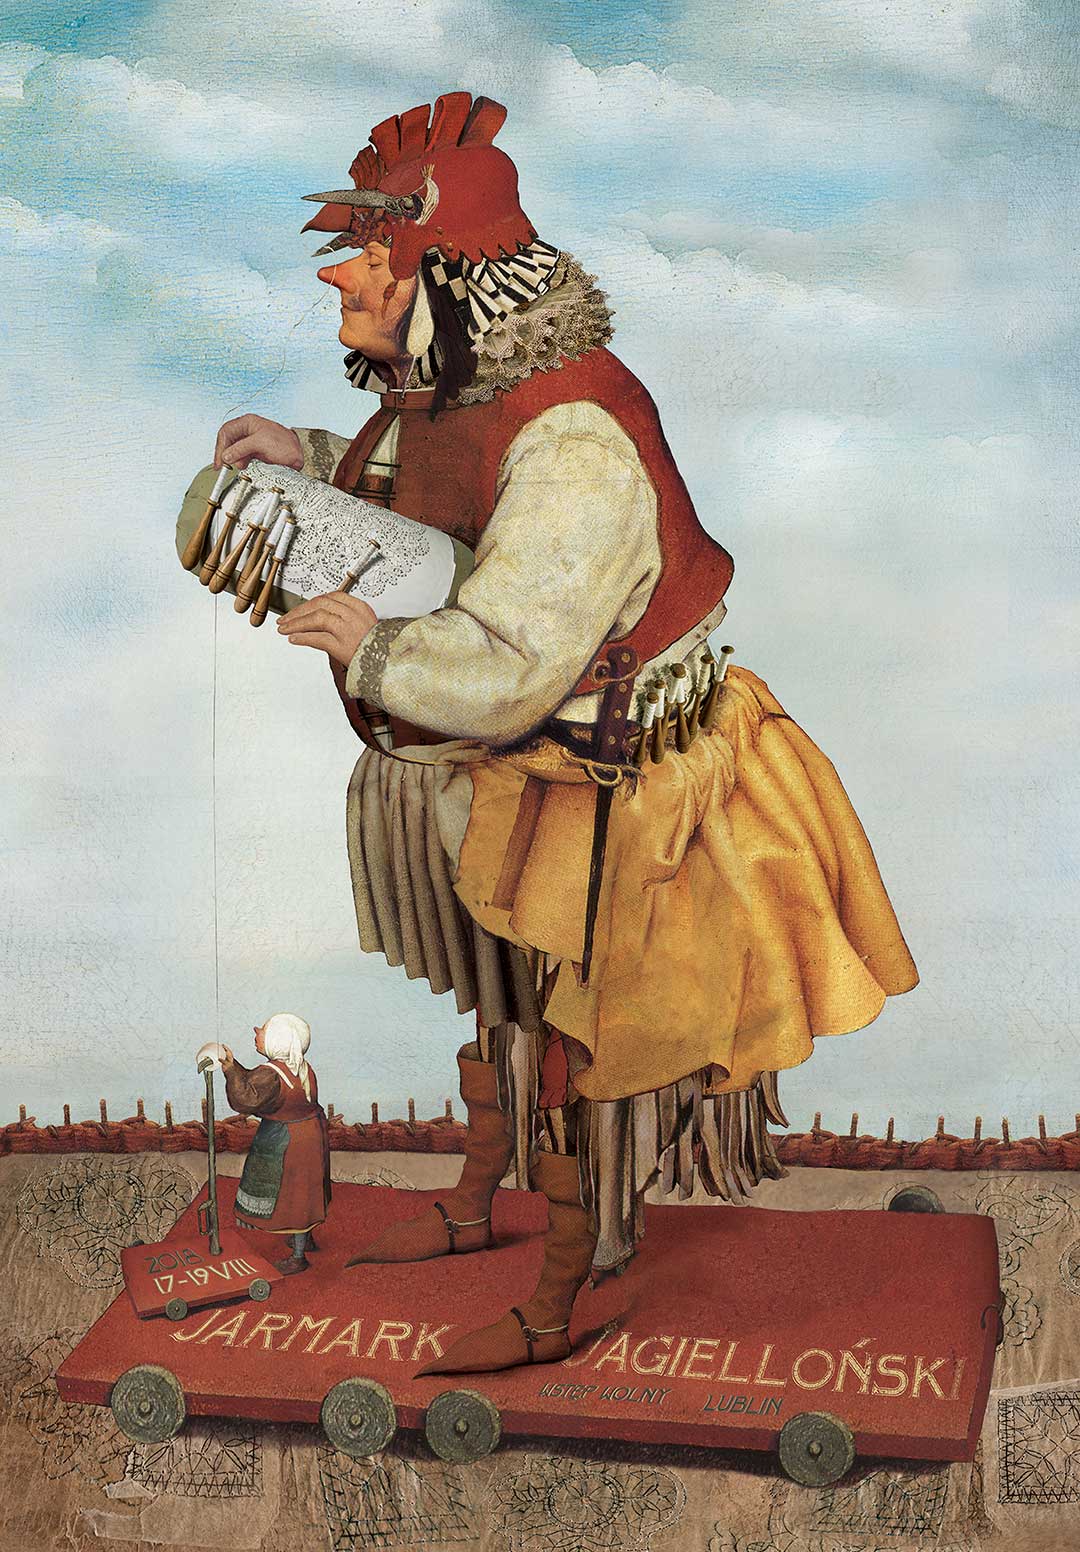 [Plakat Jarmarku Jagiellońskiego, kolaż w stylistyce retro, kura w stroju przypominającym średniowiecznego mieszczanina]